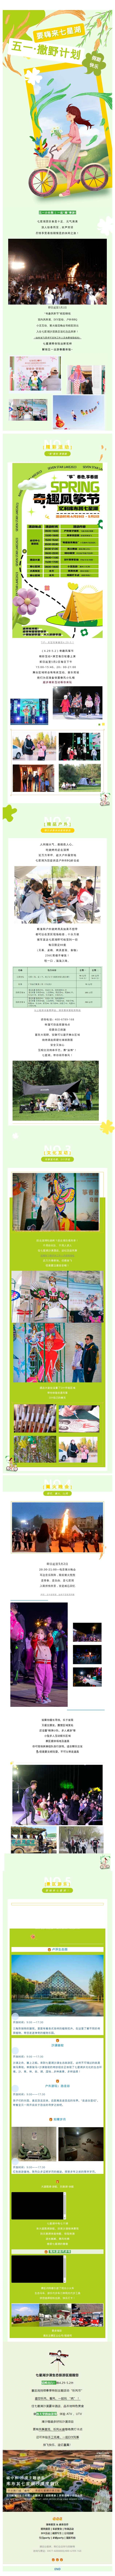 五一快乐 | 春风、春意、春趣，七星湖“奇趣风筝节”正在进行时ing~